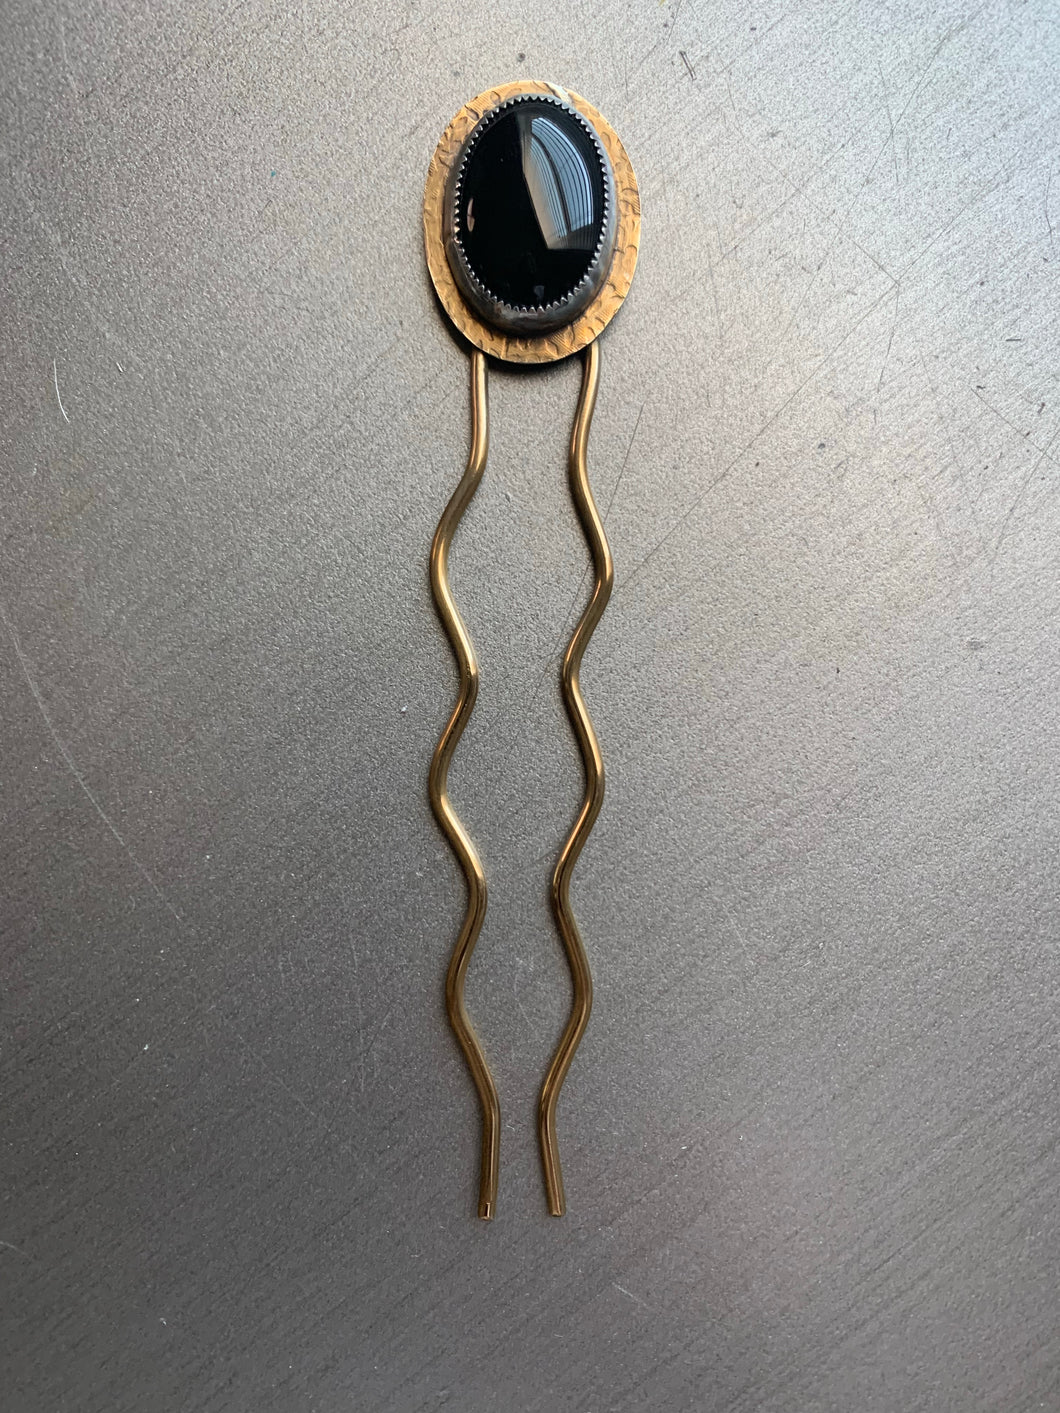 Black onyx brass hair pin